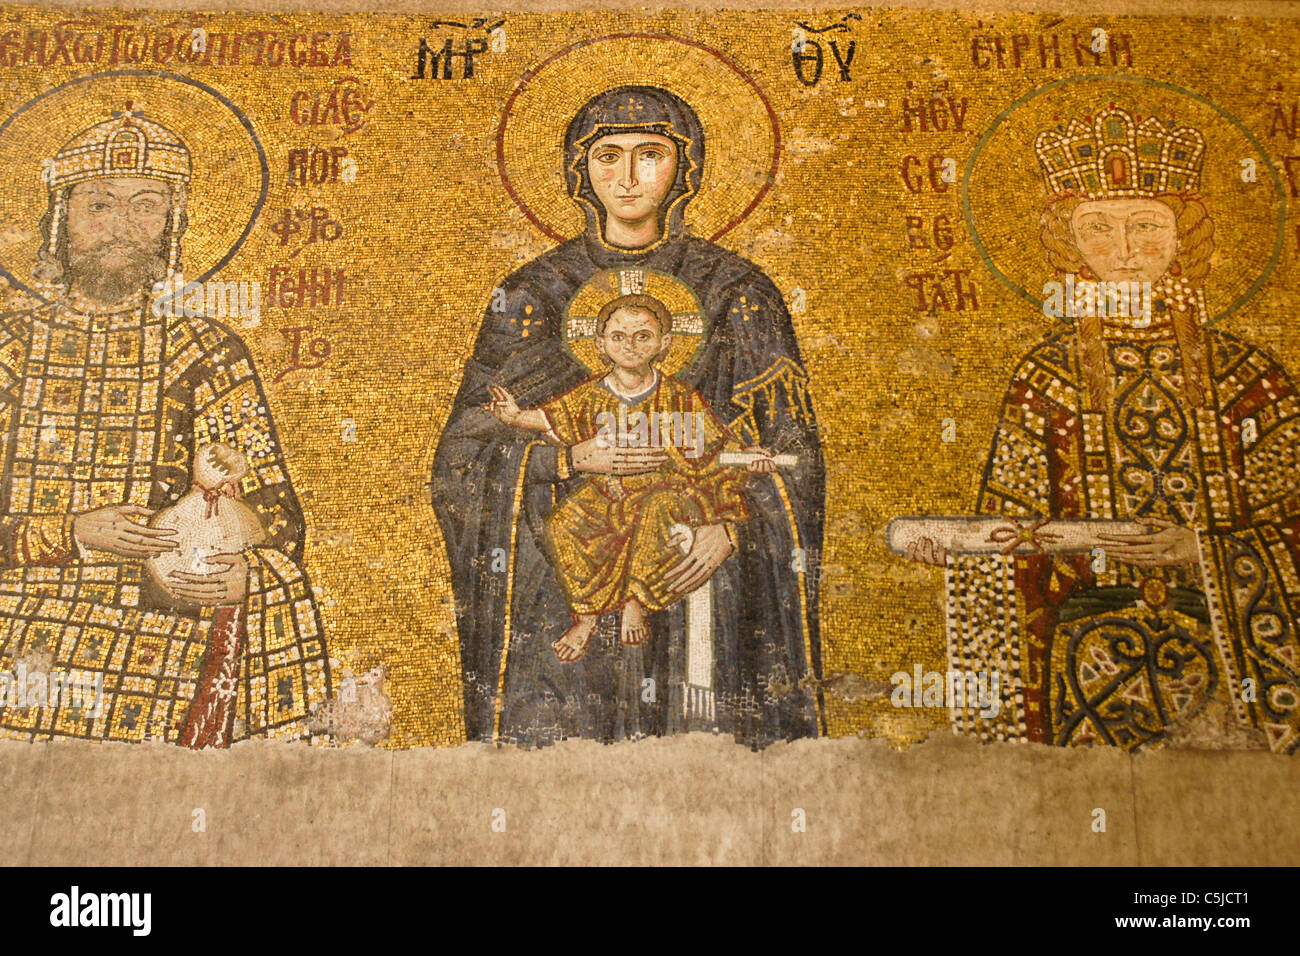 The Comnenus mosaic in Hagia Sophia Museum, Istanbul, Turkey Stock Photo